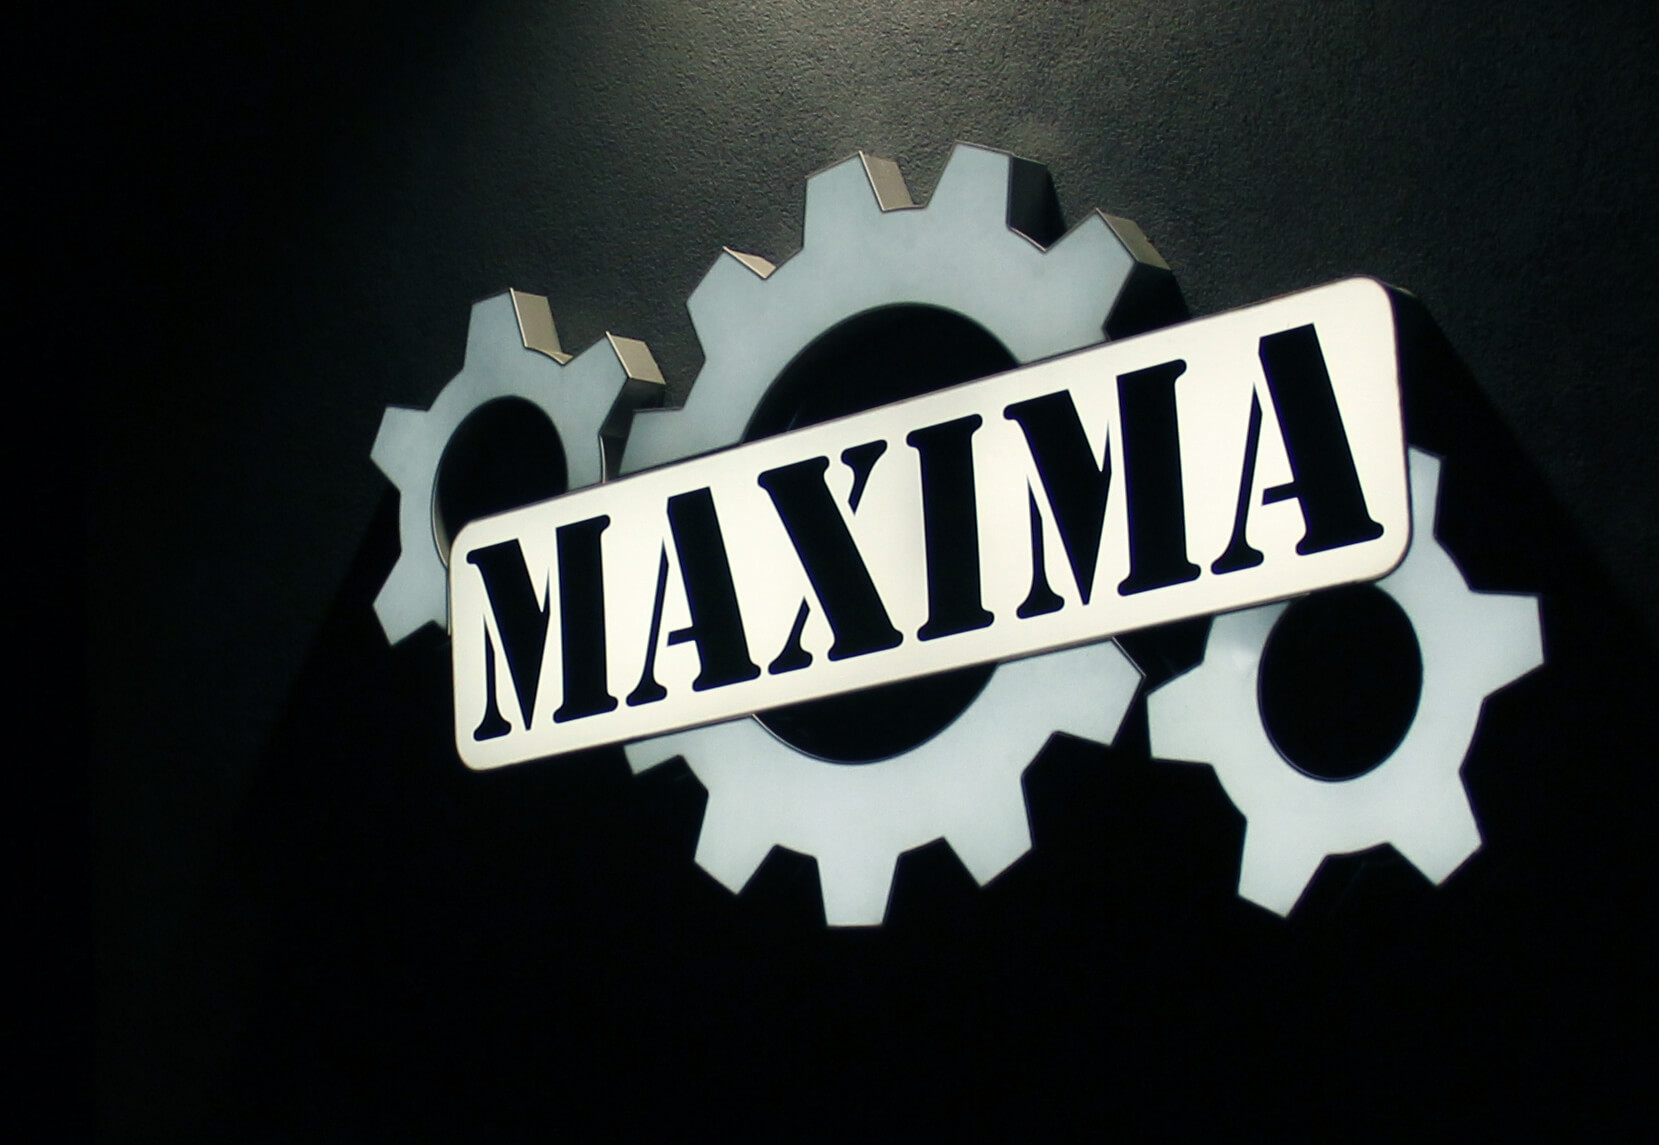 Maxima - Maxima - kaseton led na ścianie z logiem firmy, wykonany z plexiglassu